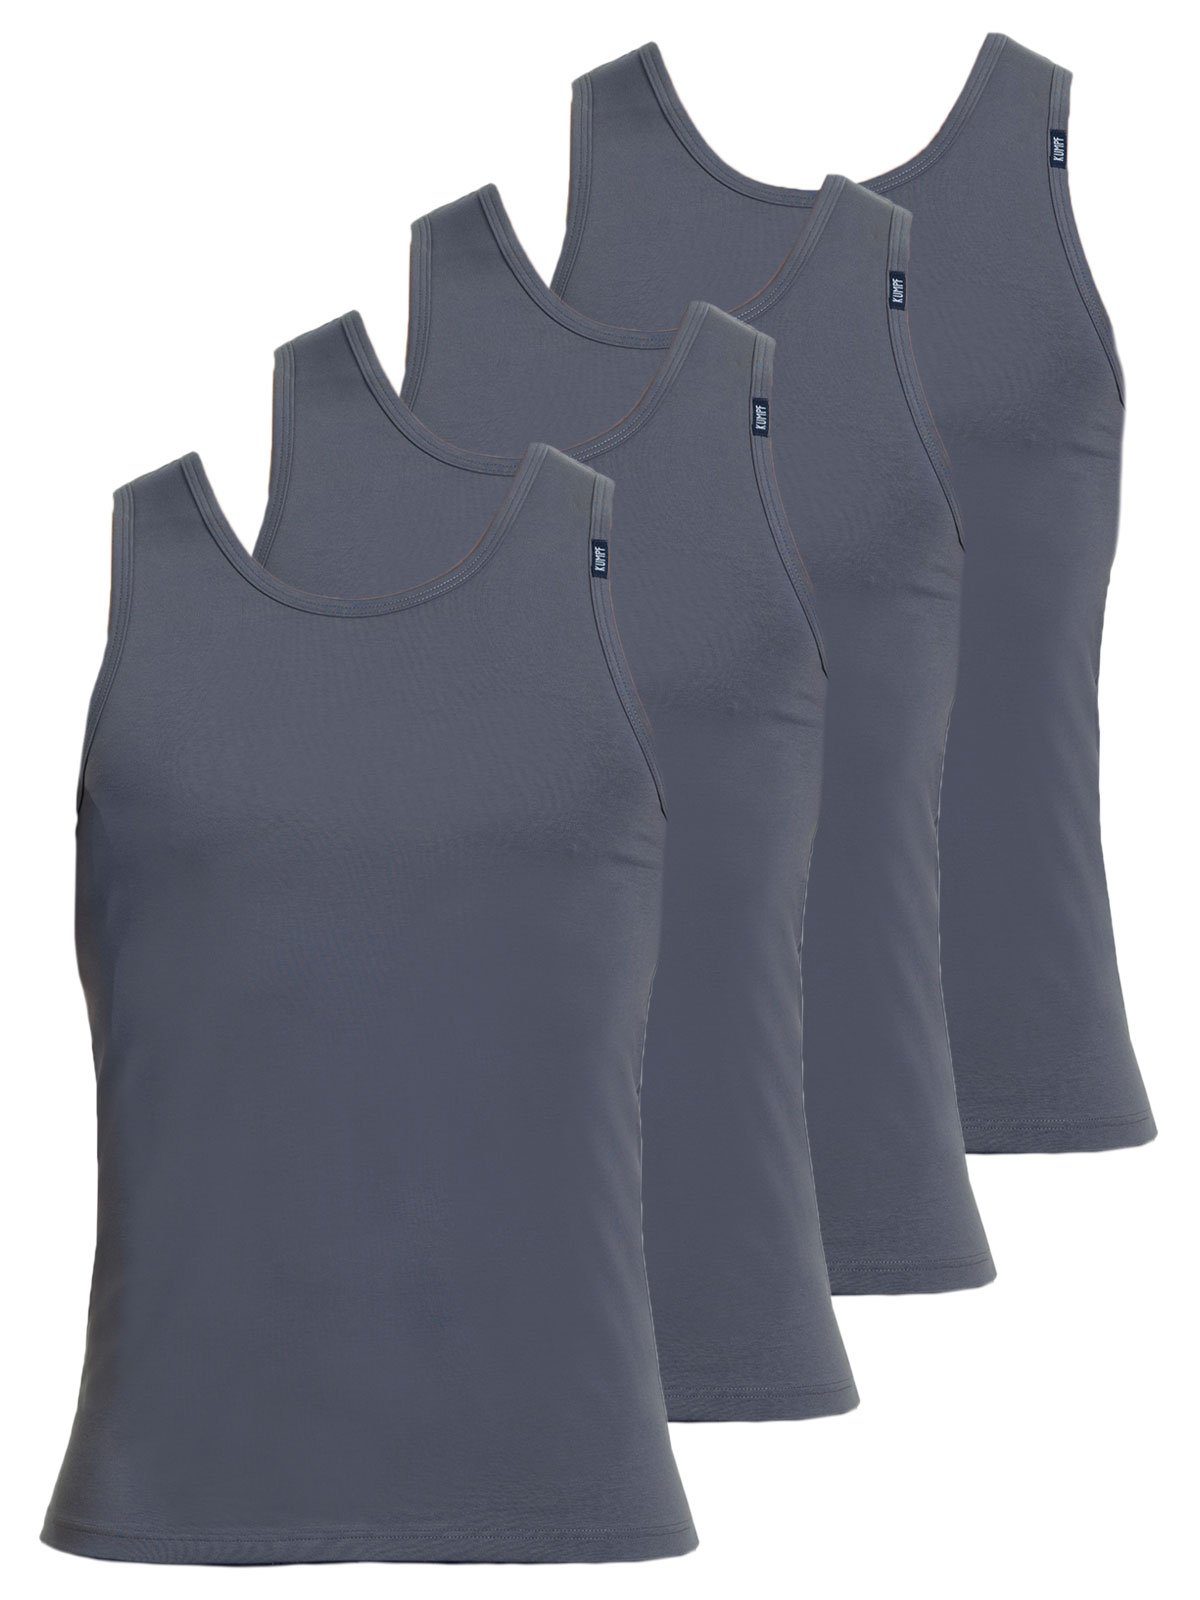 KUMPF Achselhemd 4er Sparpack Herren hohe Unterhemd mittelgrau Cotton (Spar-Set, 4-St) Markenqualität Bio